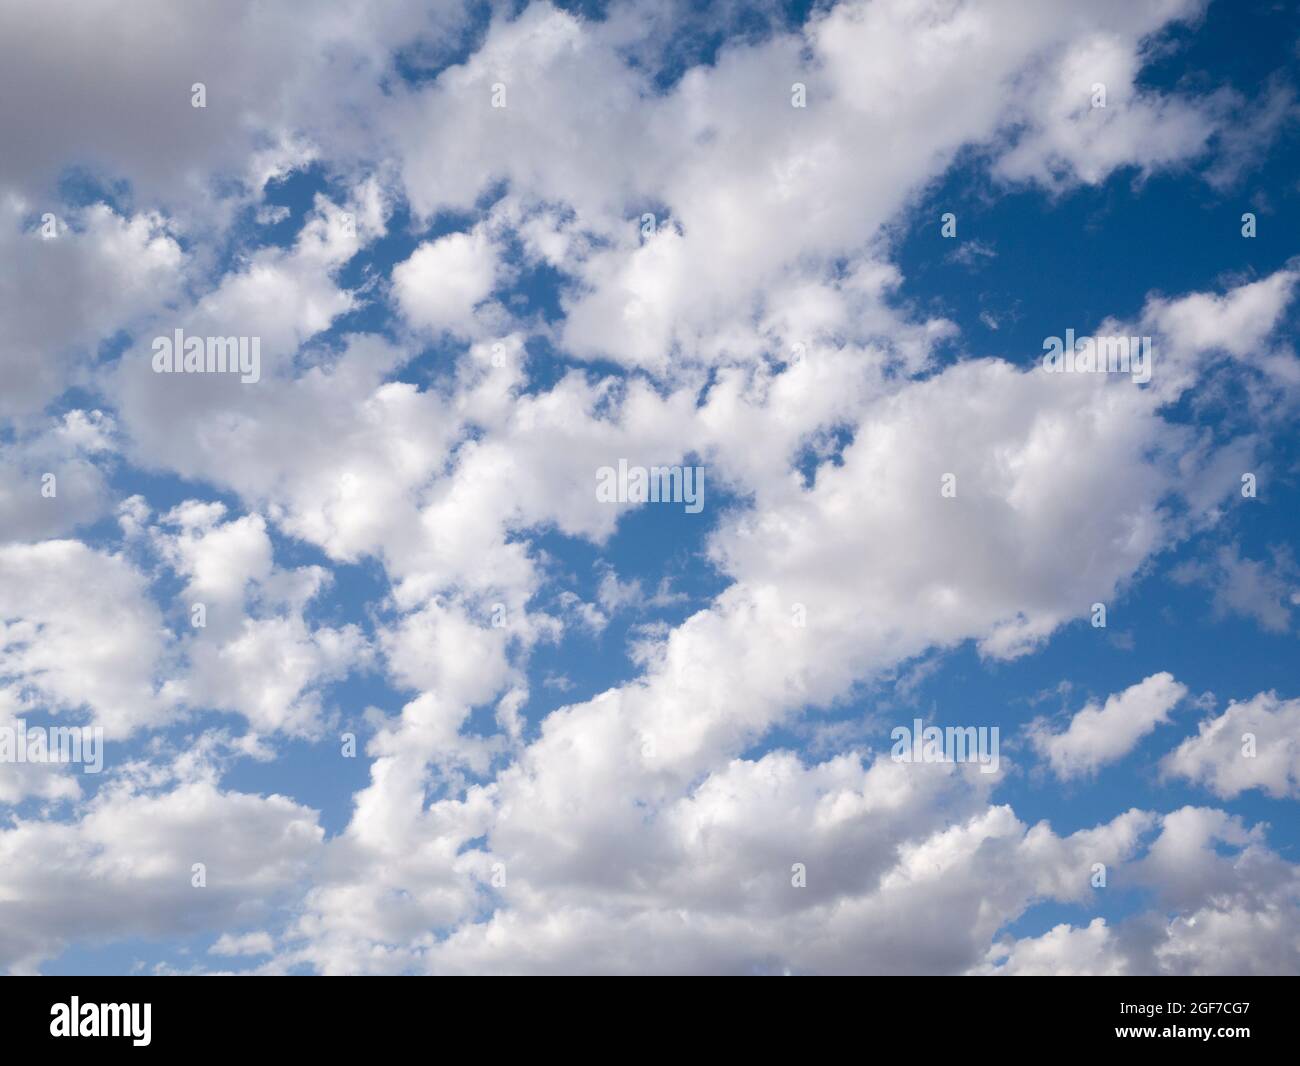 Geschwollene weiße, sonnenbeschienene Altocumulus castellanus Wolken gegen einen blauen Himmel. Stockfoto